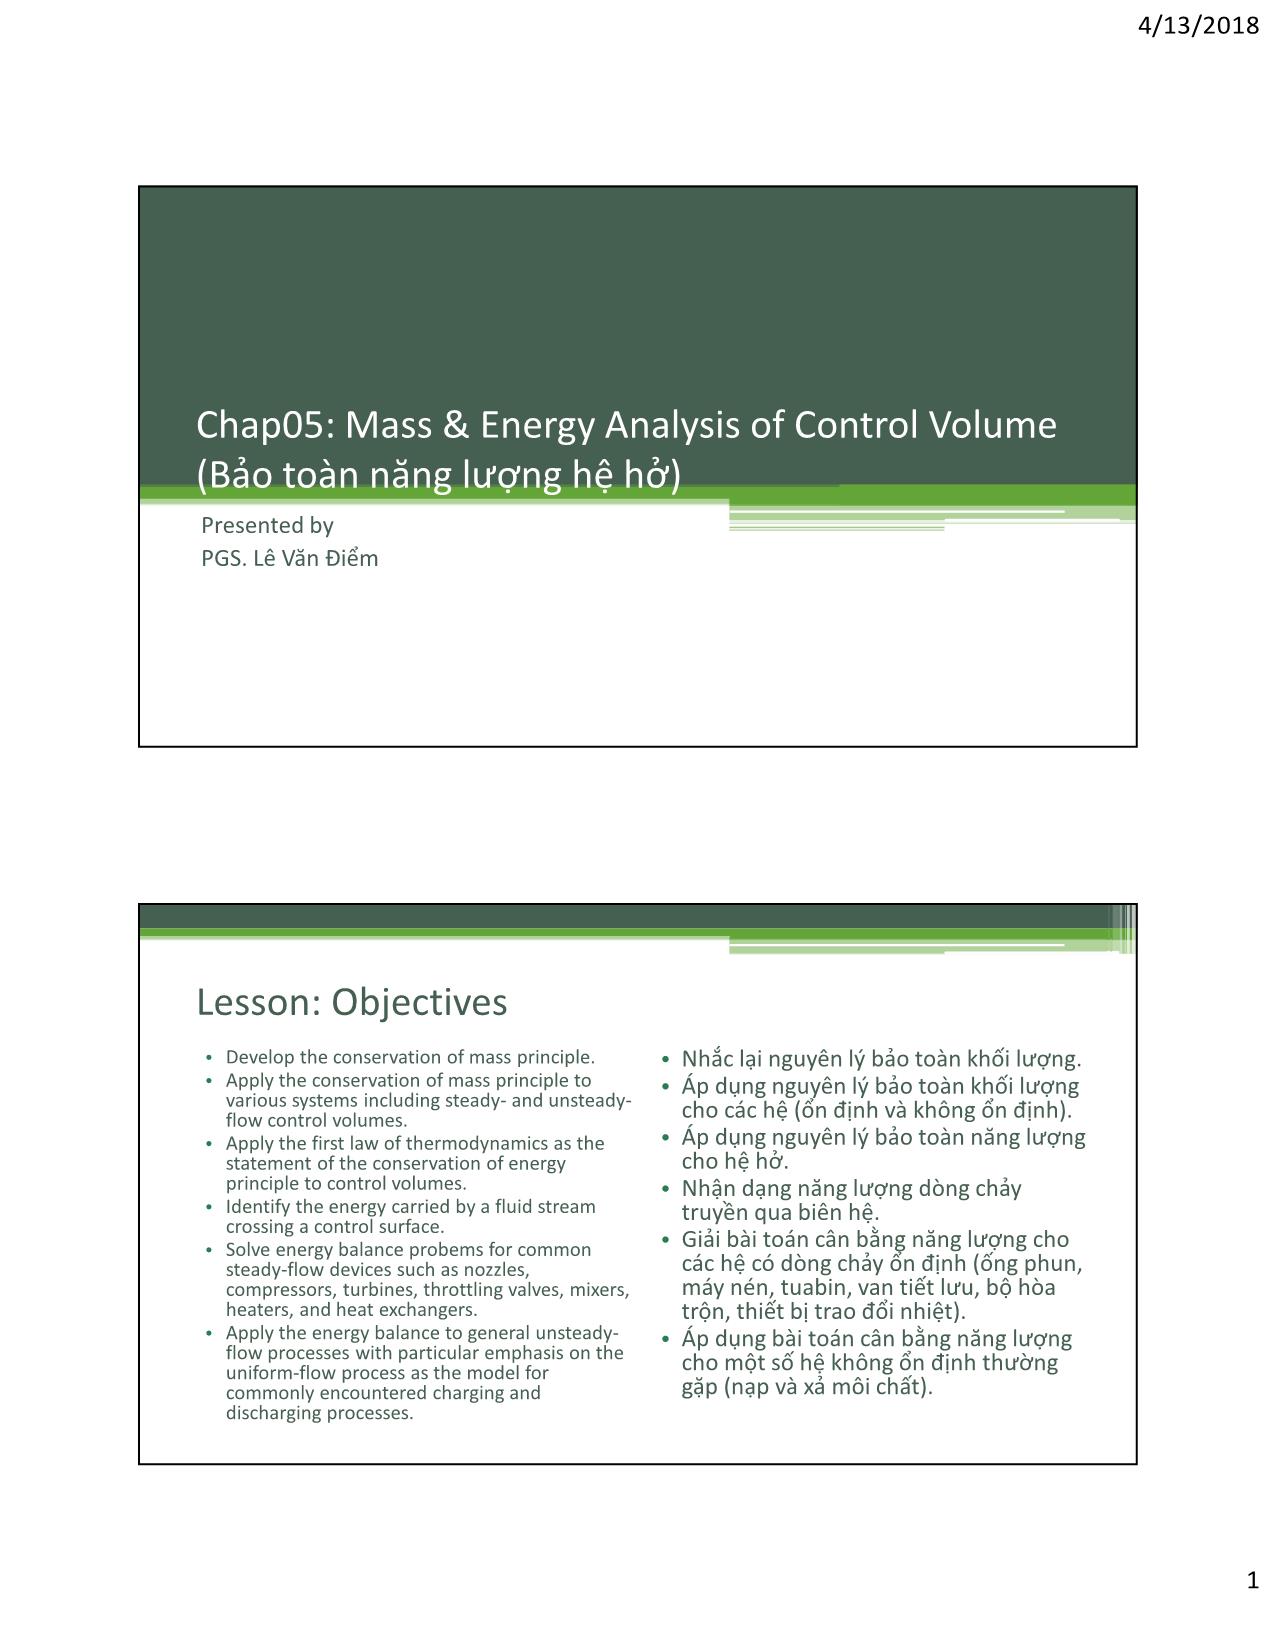 Bài giảng Kỹ thuật nhiệt - Chapter 5: Mass & Energy analysis of control volume (Bảo toàn năng lượng hệ hở) - Lê Văn Điểm trang 1